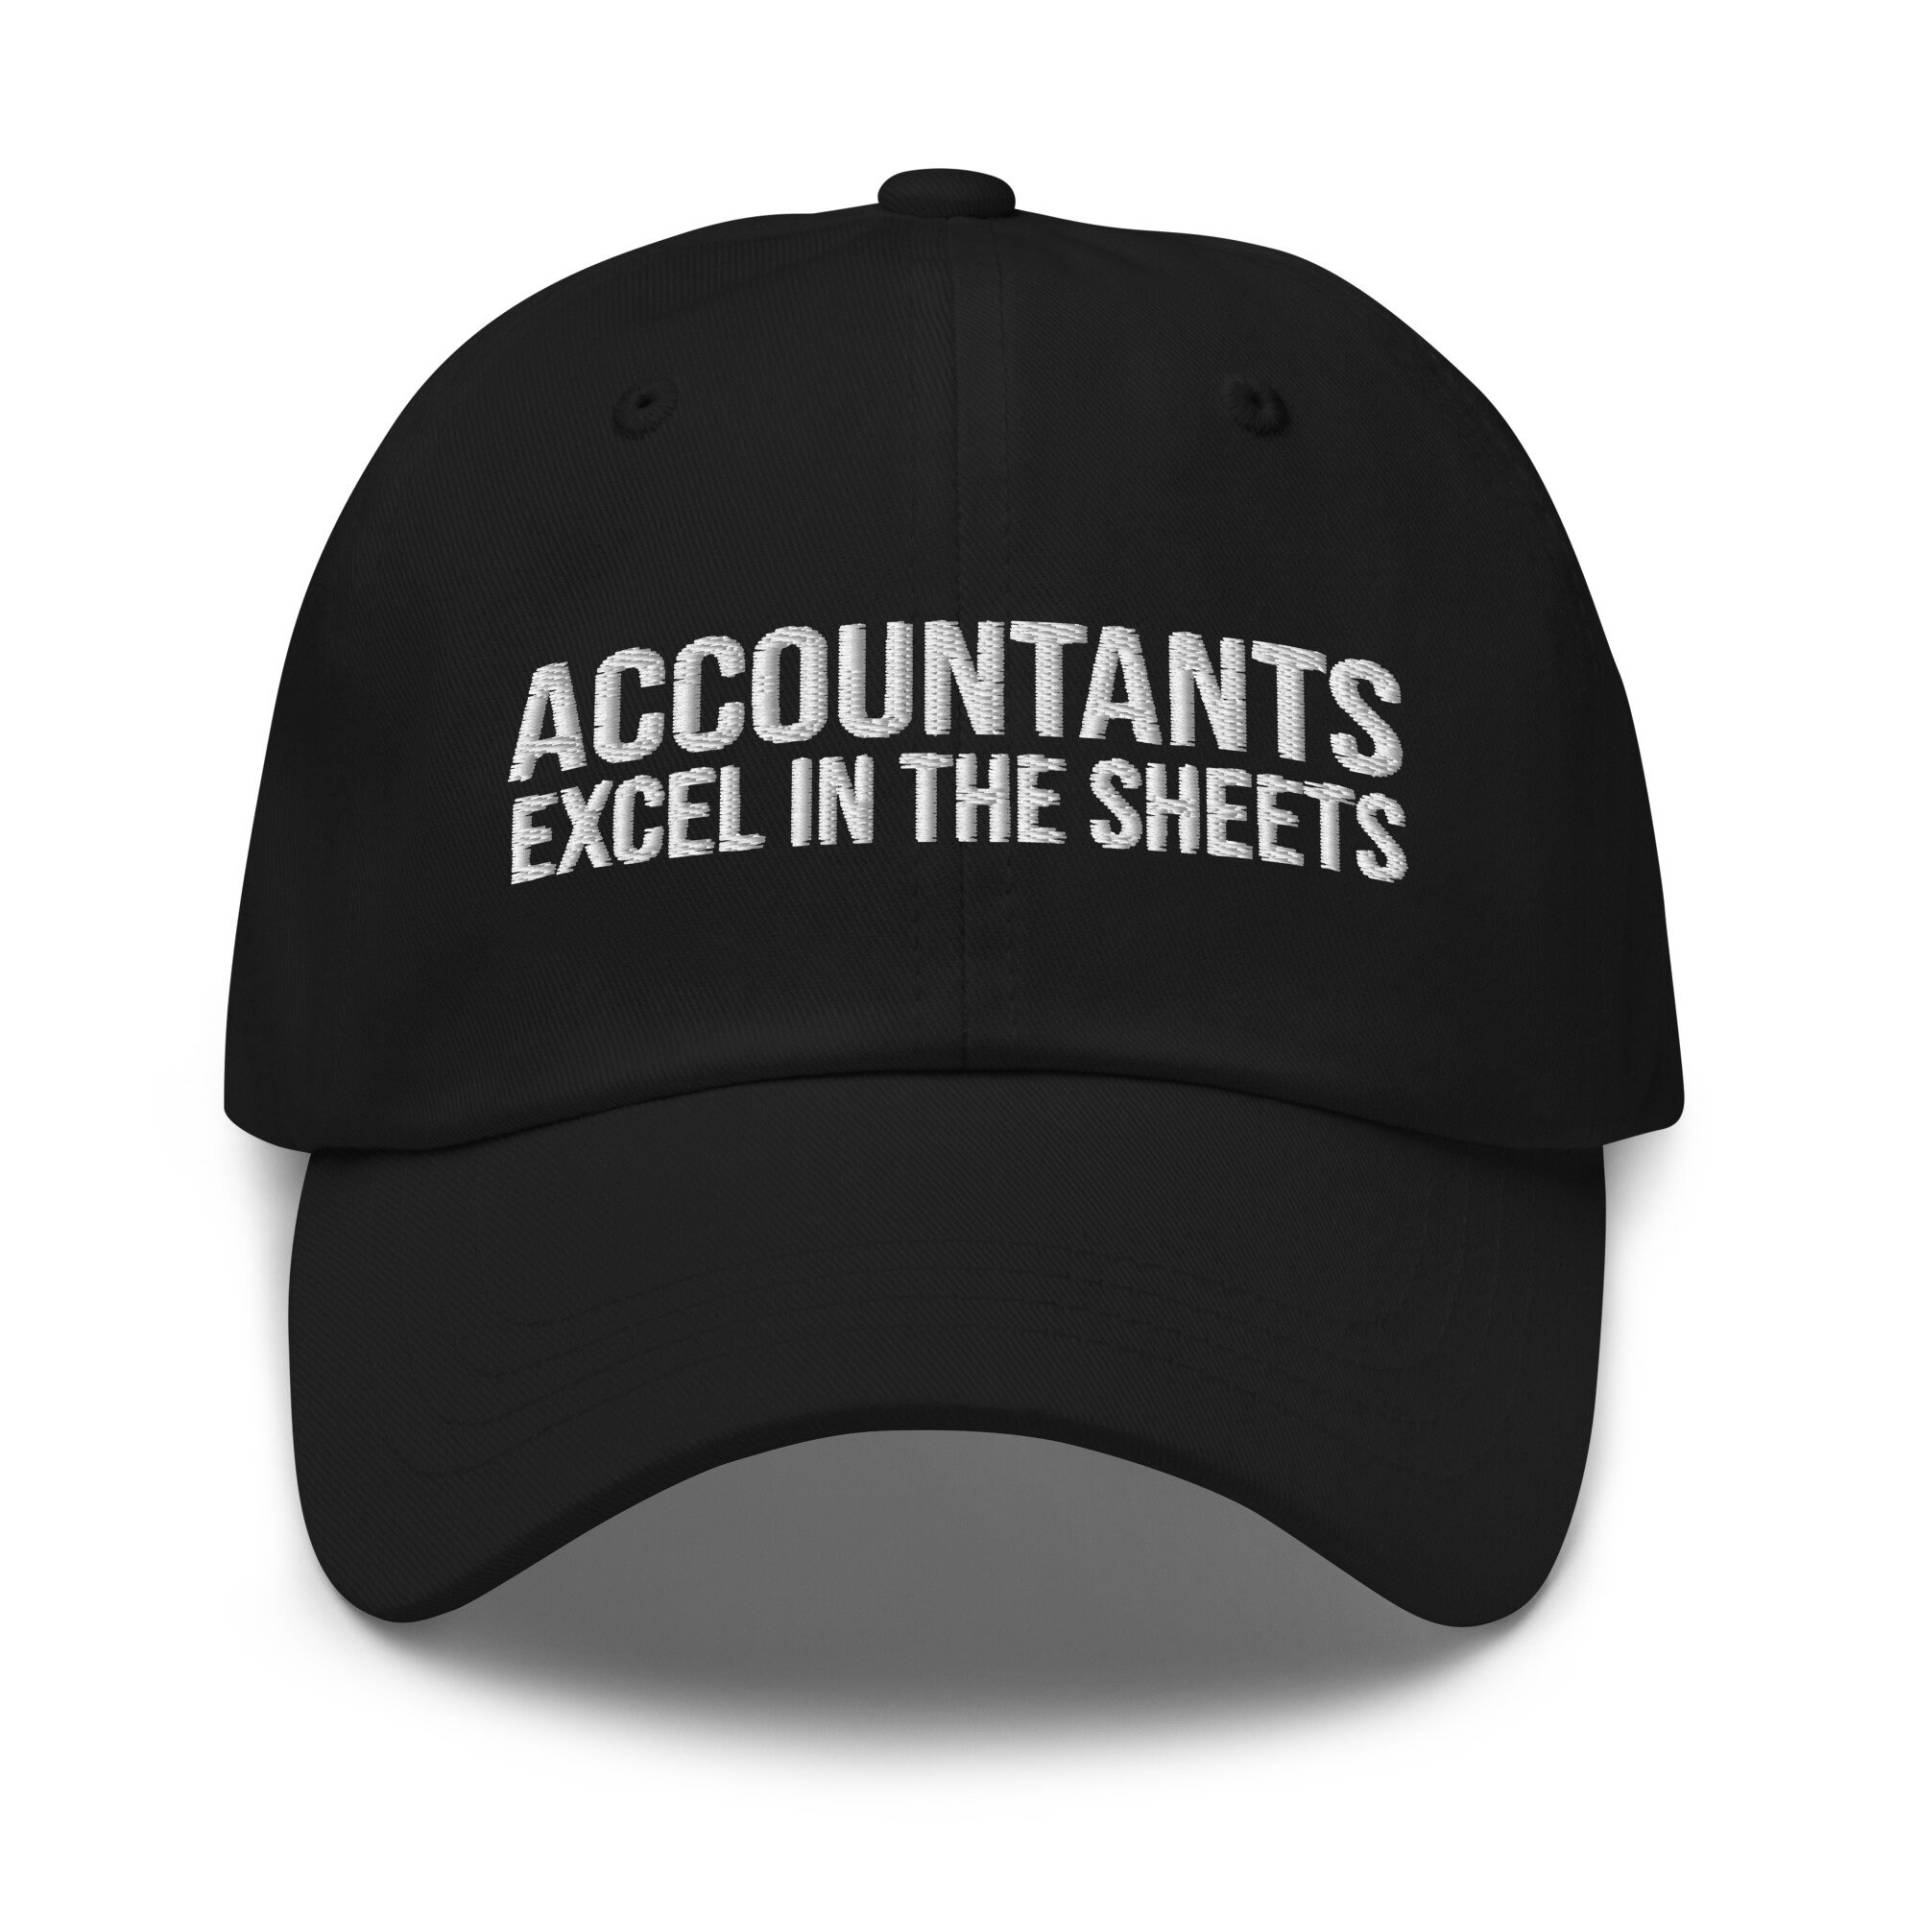 Buchhalter Excel in The Sheets Hat, Cpa Geschenk, Geschenk Für Cpa, Buchhaltungsgeschenk, Steuersaison, Gestickter Hut, Gestickte Mütze von CreativeHats4You